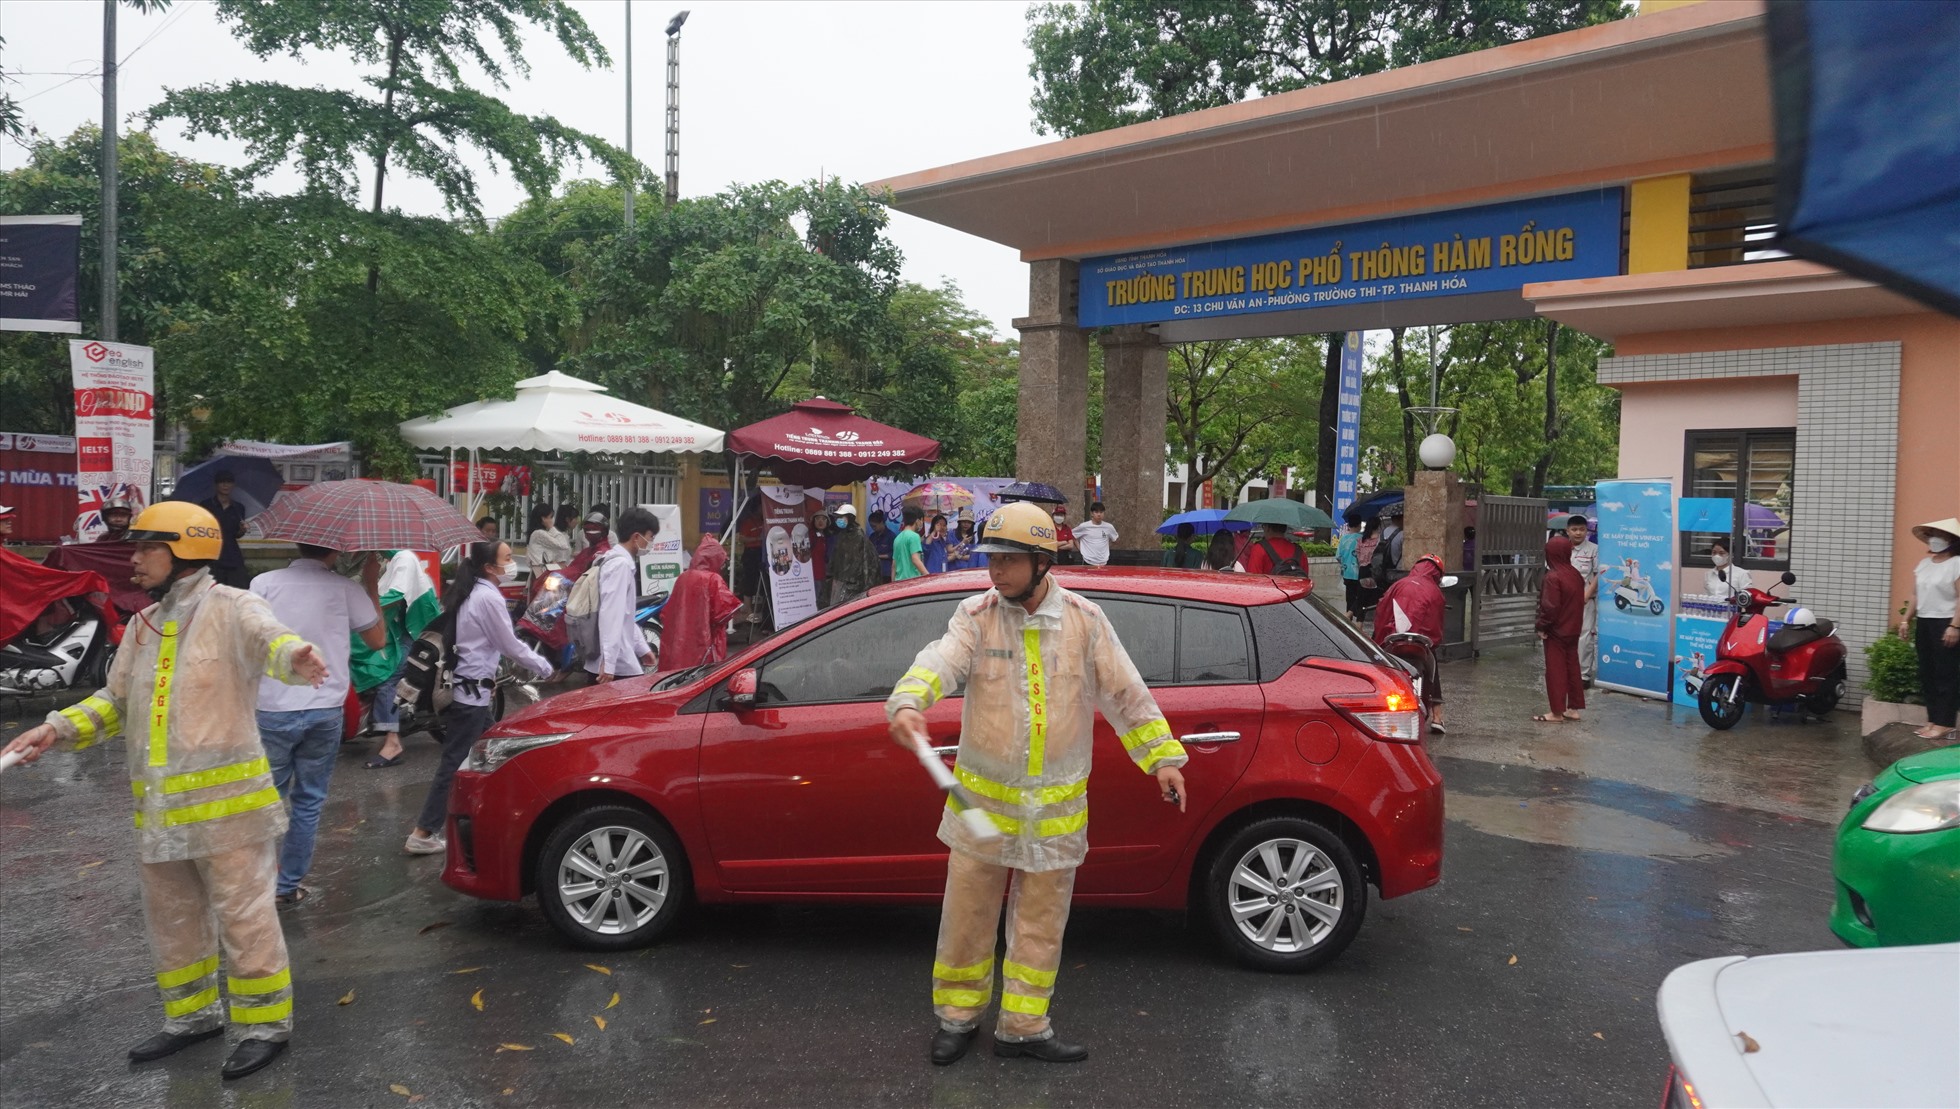 Ghi nhận của Lao Động, trong sáng ngày 9.6, hàng nghìn phụ huynh ở TP.Thanh Hóa đã đưa con đến các điểm thi trong tiết trời mưa lớn. Ảnh: Quách Du